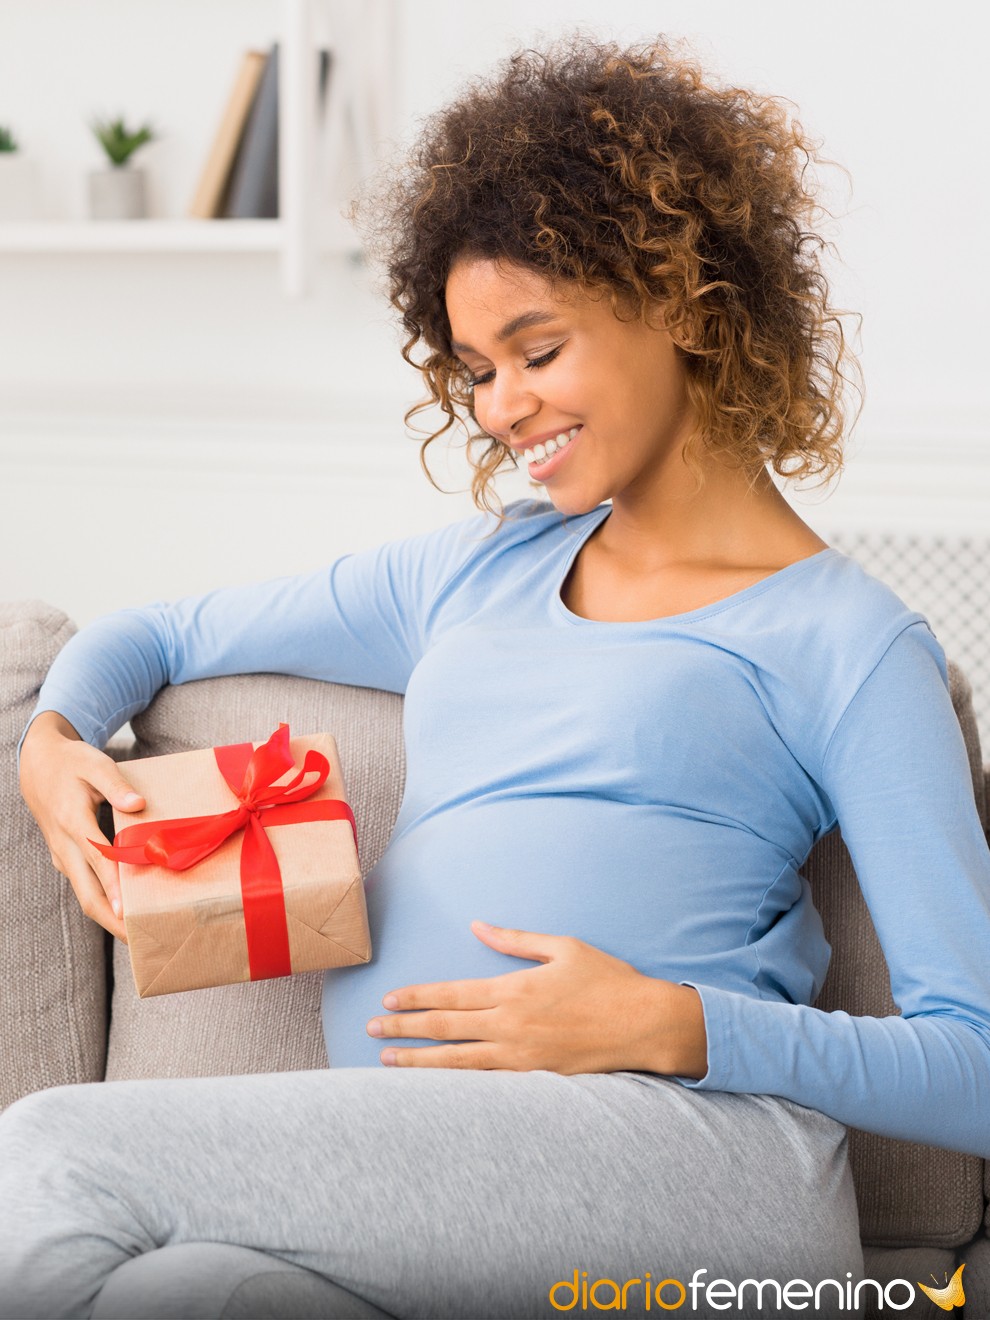 Ideas de regalos para embarazadas: obsequios para futuras mamás